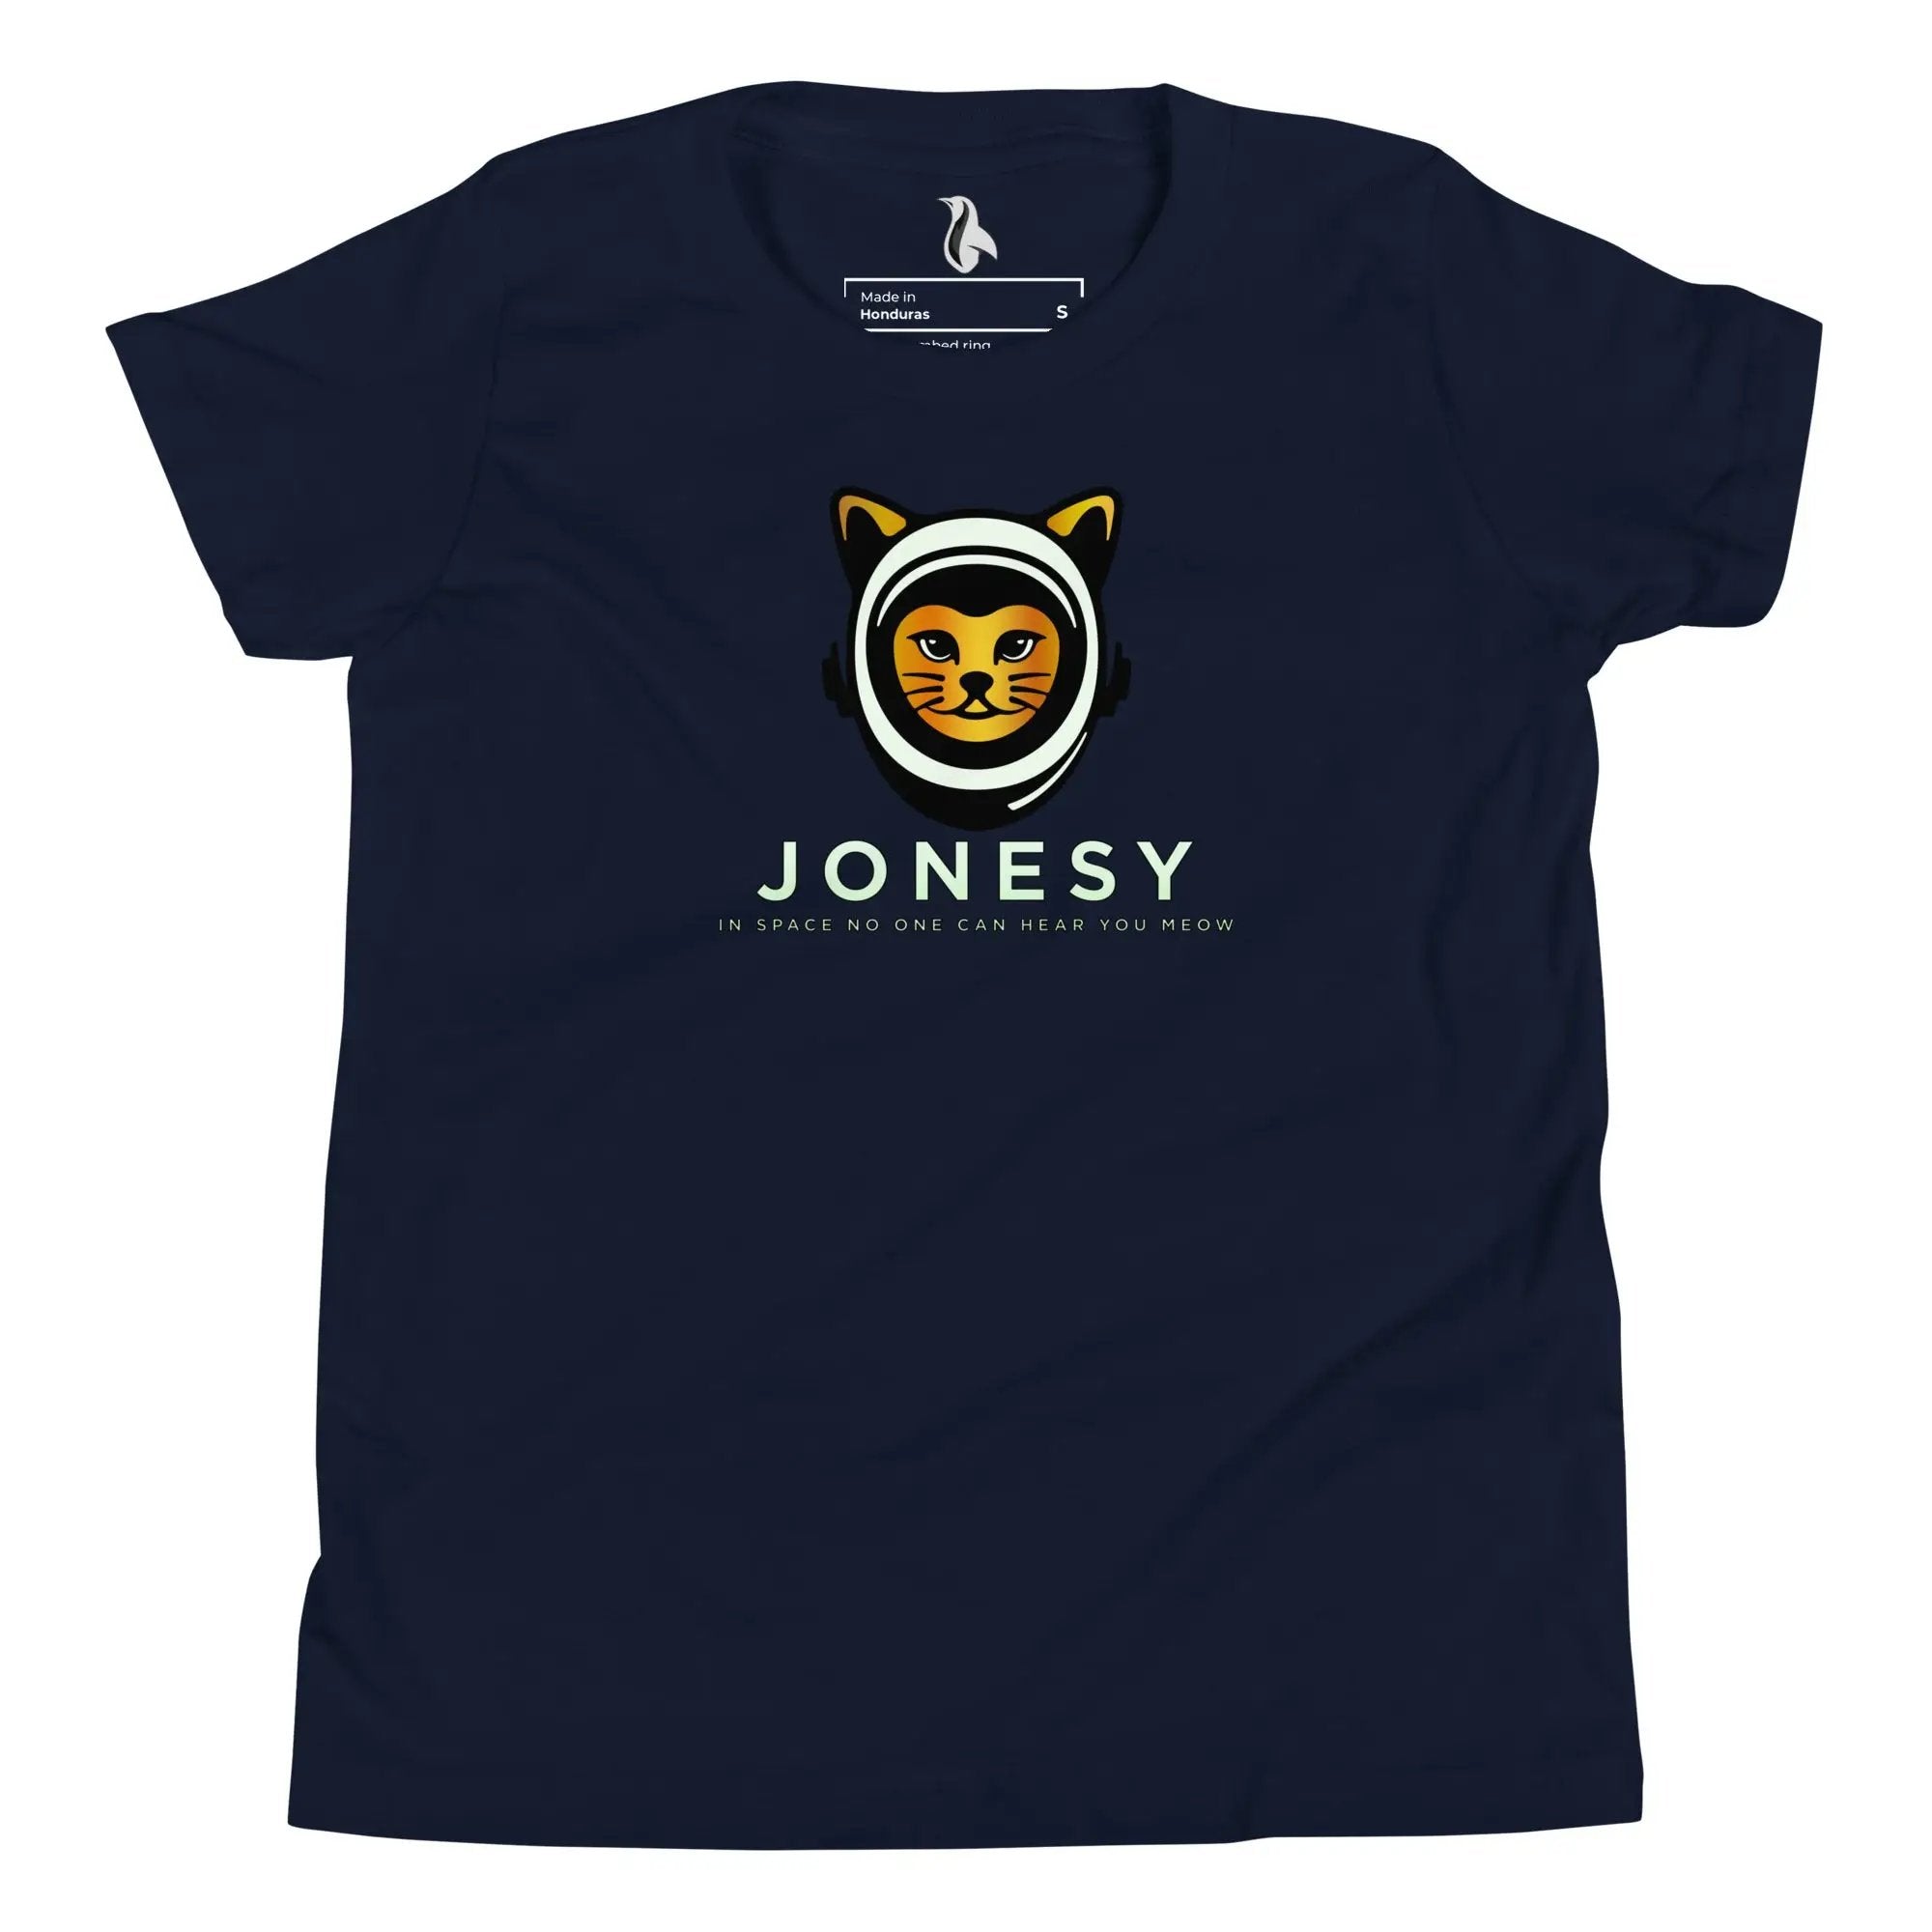 Jonesy Youth Short Sleeve T-Shirt